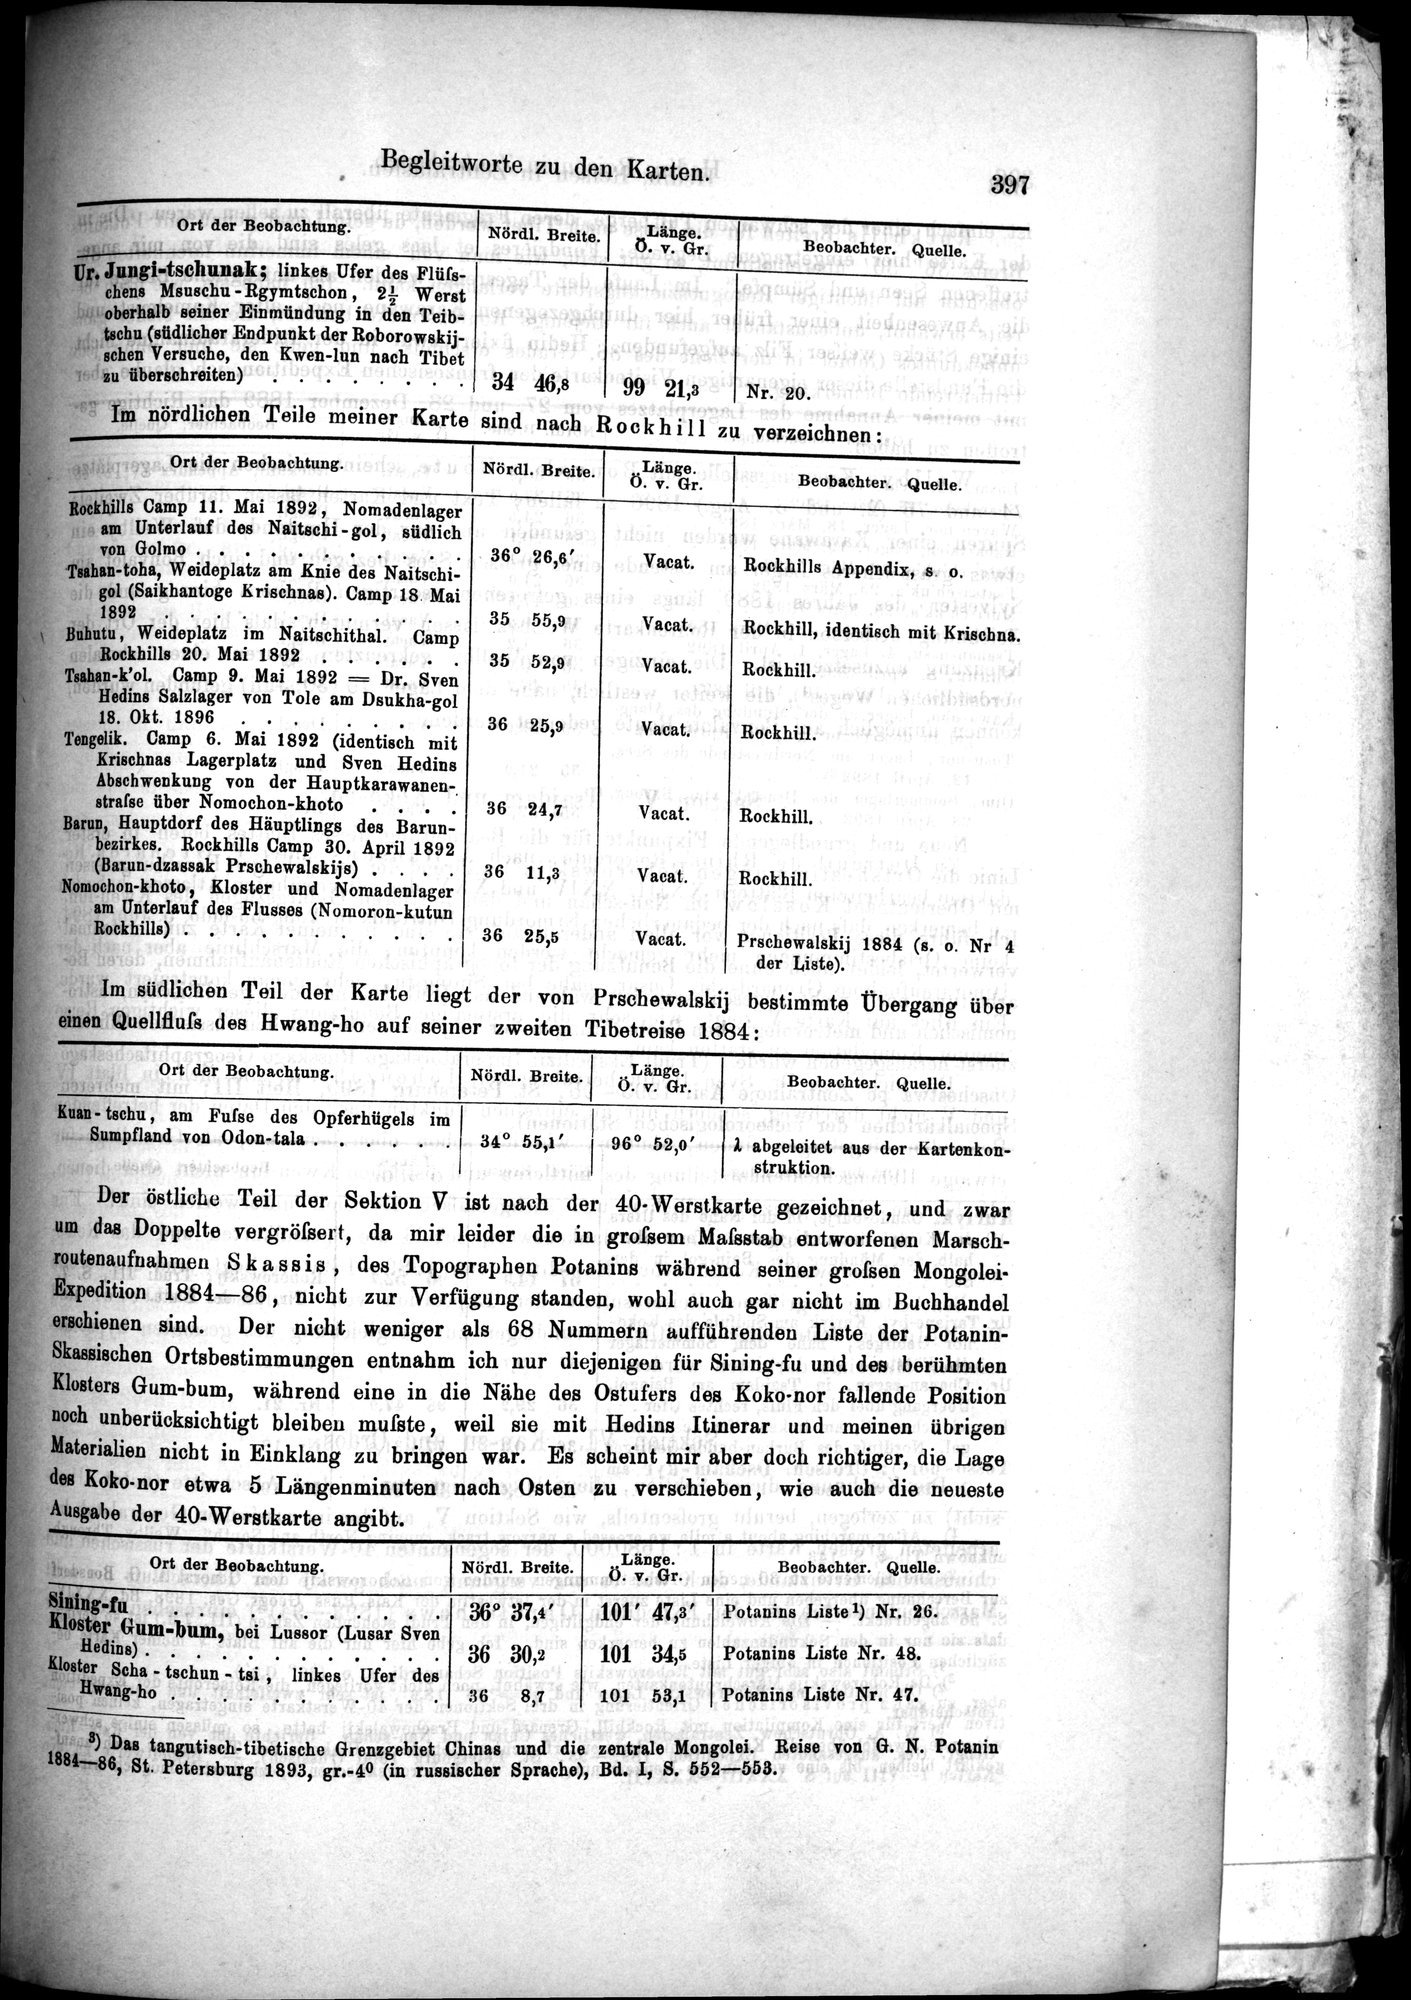 Die Geographische-Wissenschaftlichen Ergebnisse meiner Reisen in Zentralasien, 1894-1897 : vol.1 / Page 409 (Grayscale High Resolution Image)